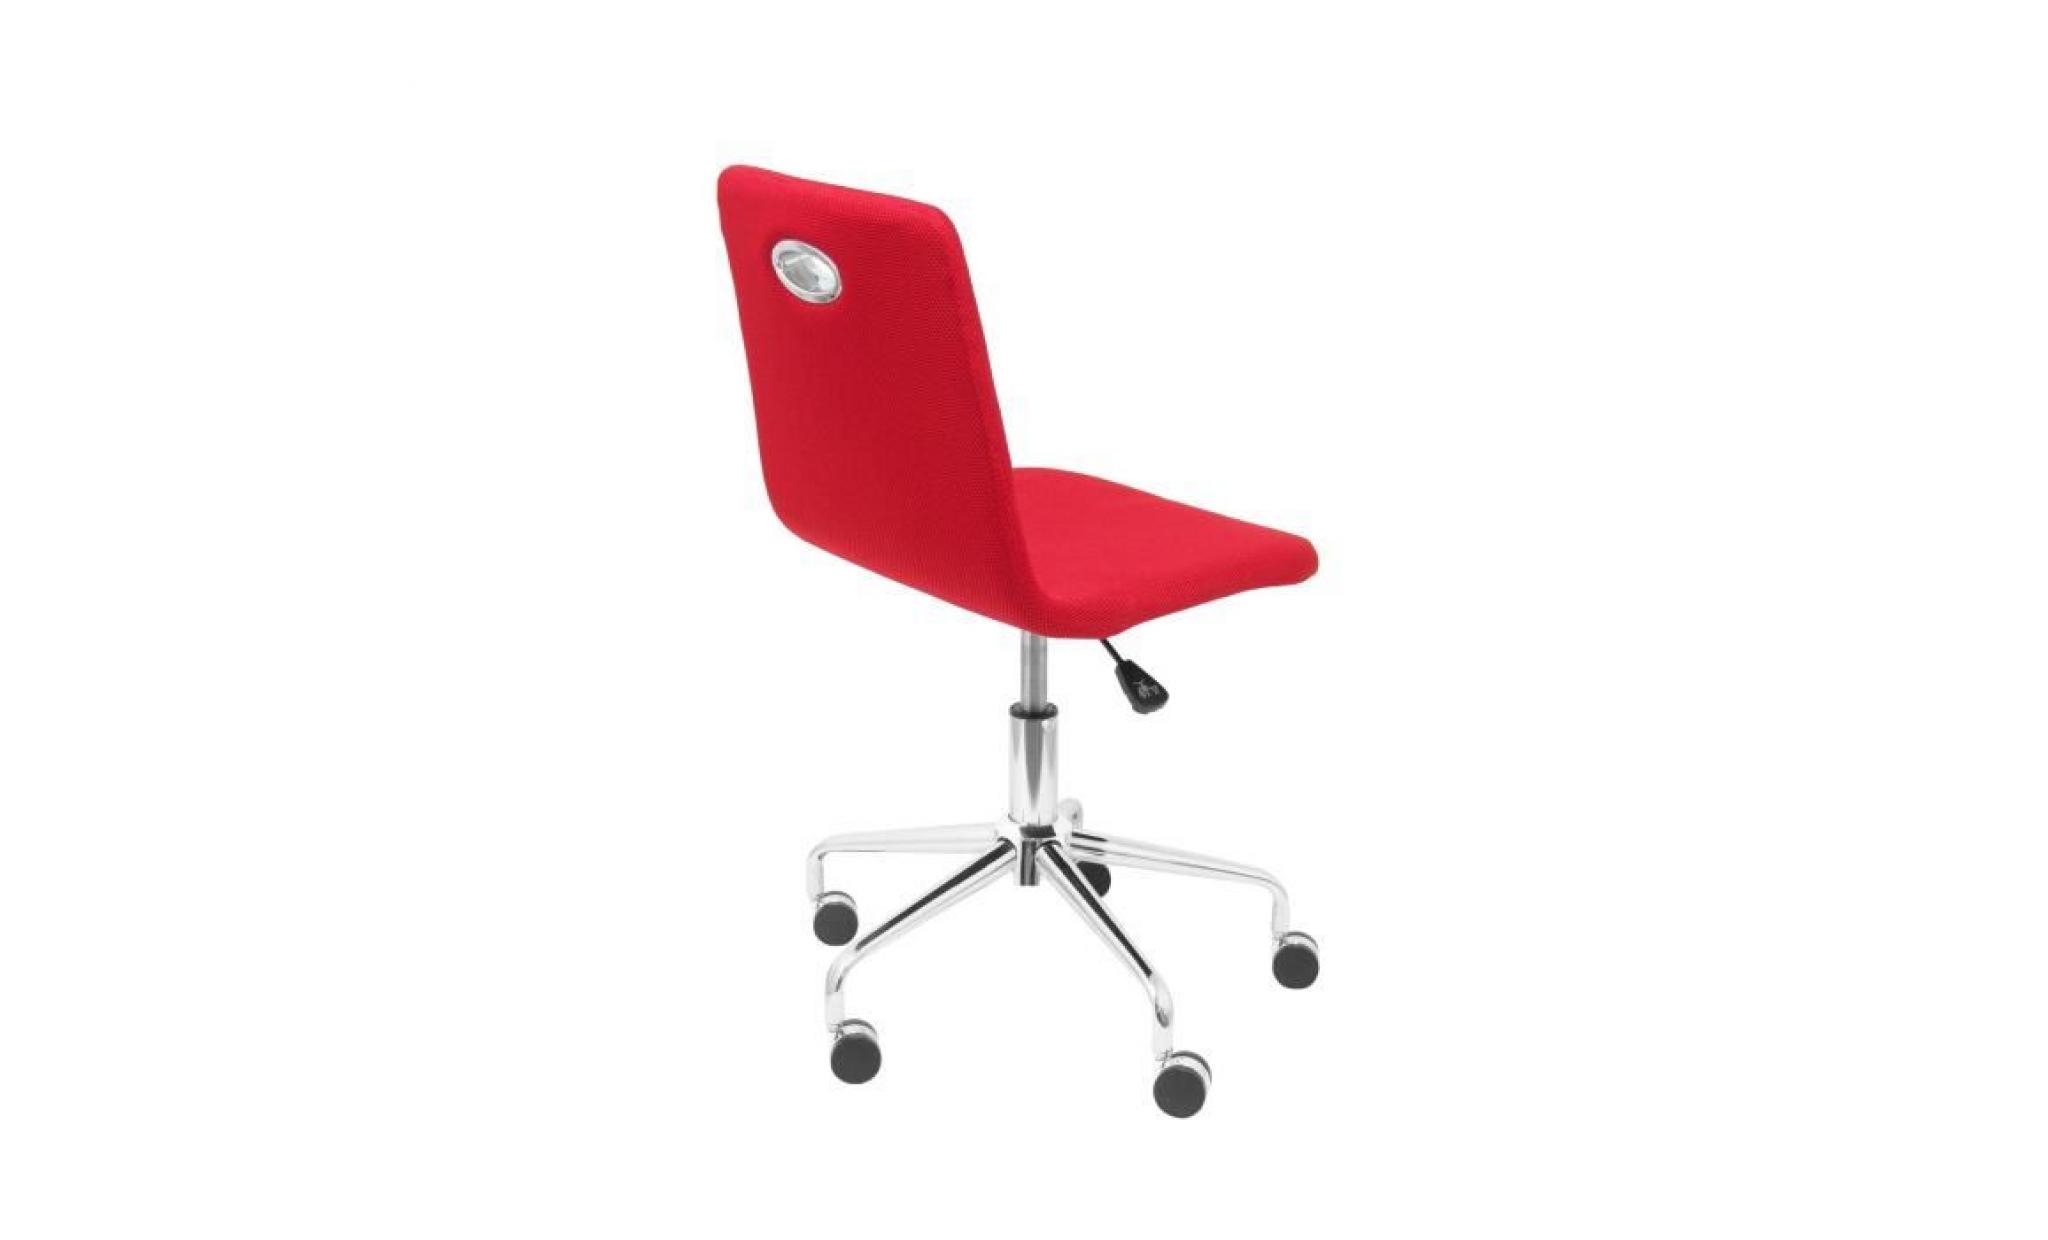 fauteuil de bureau ergonomique pour enfants avec mécanisme de pivotement, accoudoirs fixes et siège réglable en hauteur dossier en pas cher